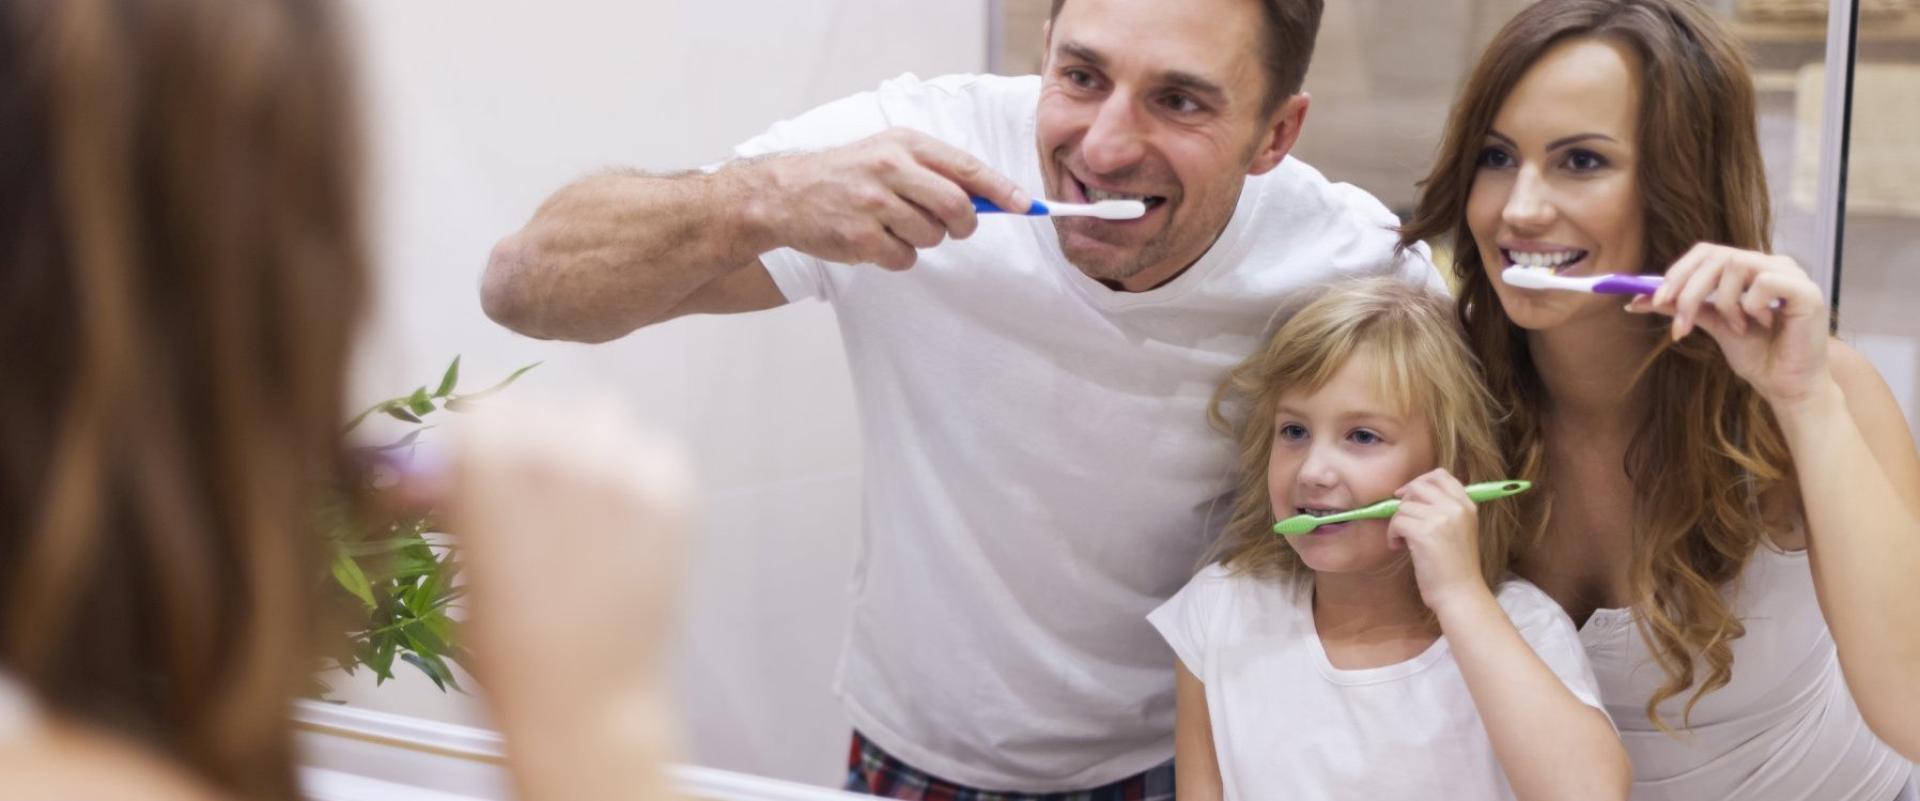 Higiena jamy ustnej – jak dbać o zęby